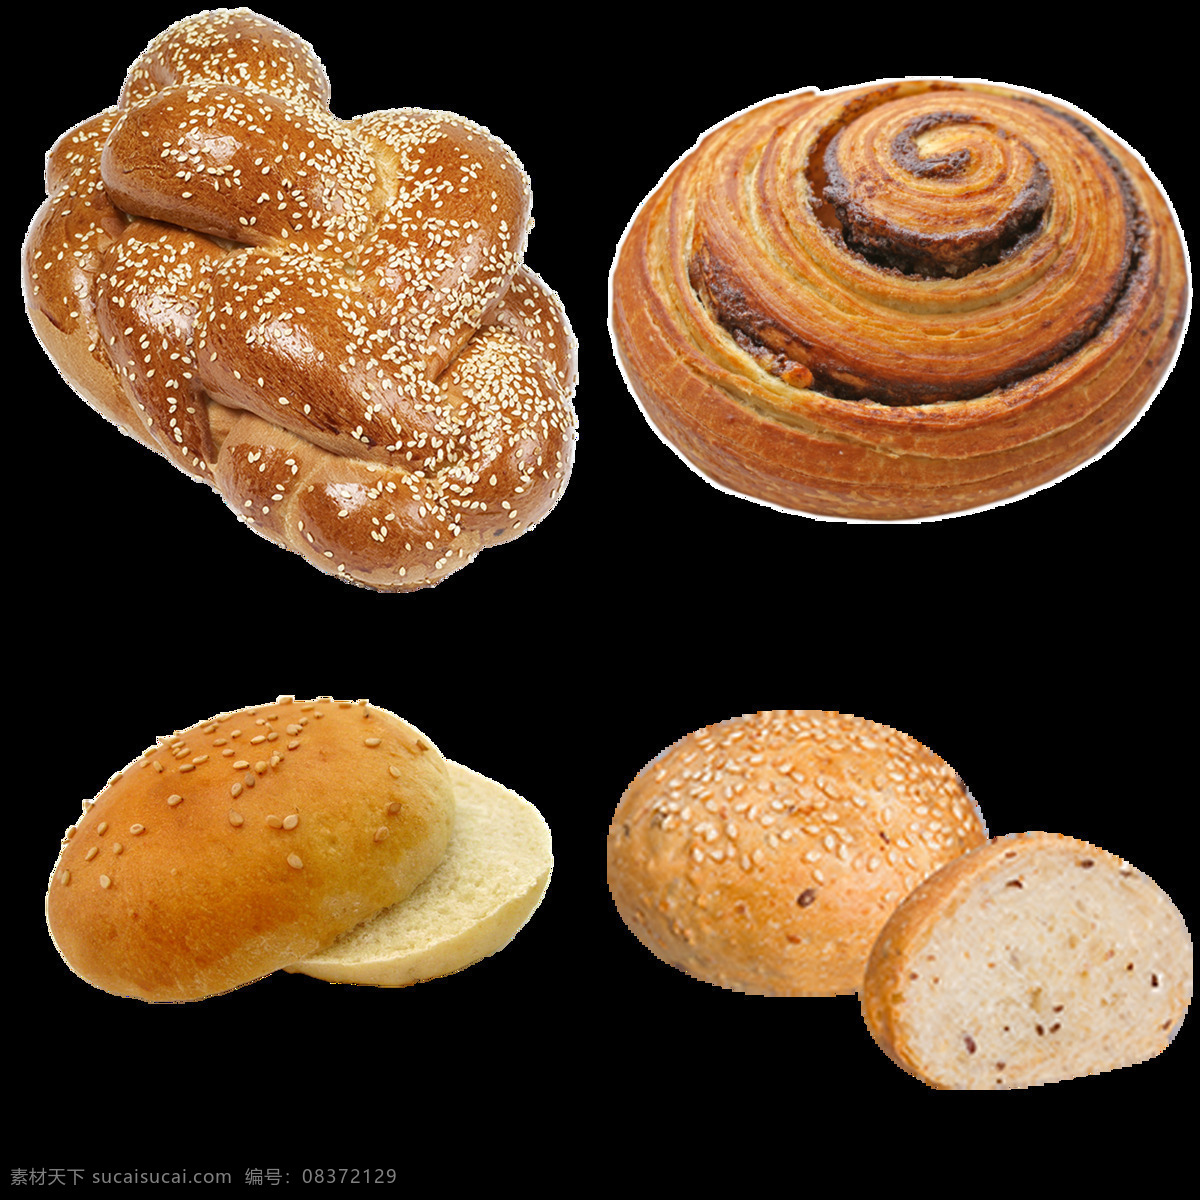 四 种 小 面包 免 抠 透明 图 层 法式小面包 豆沙面包 小天使面包 绿茶面包 小杨子面包 面包酥 乳酪面包 圆形小面包 蜂蜜小面包 奶黄小面包 花样小面包 法式 蜂蜜